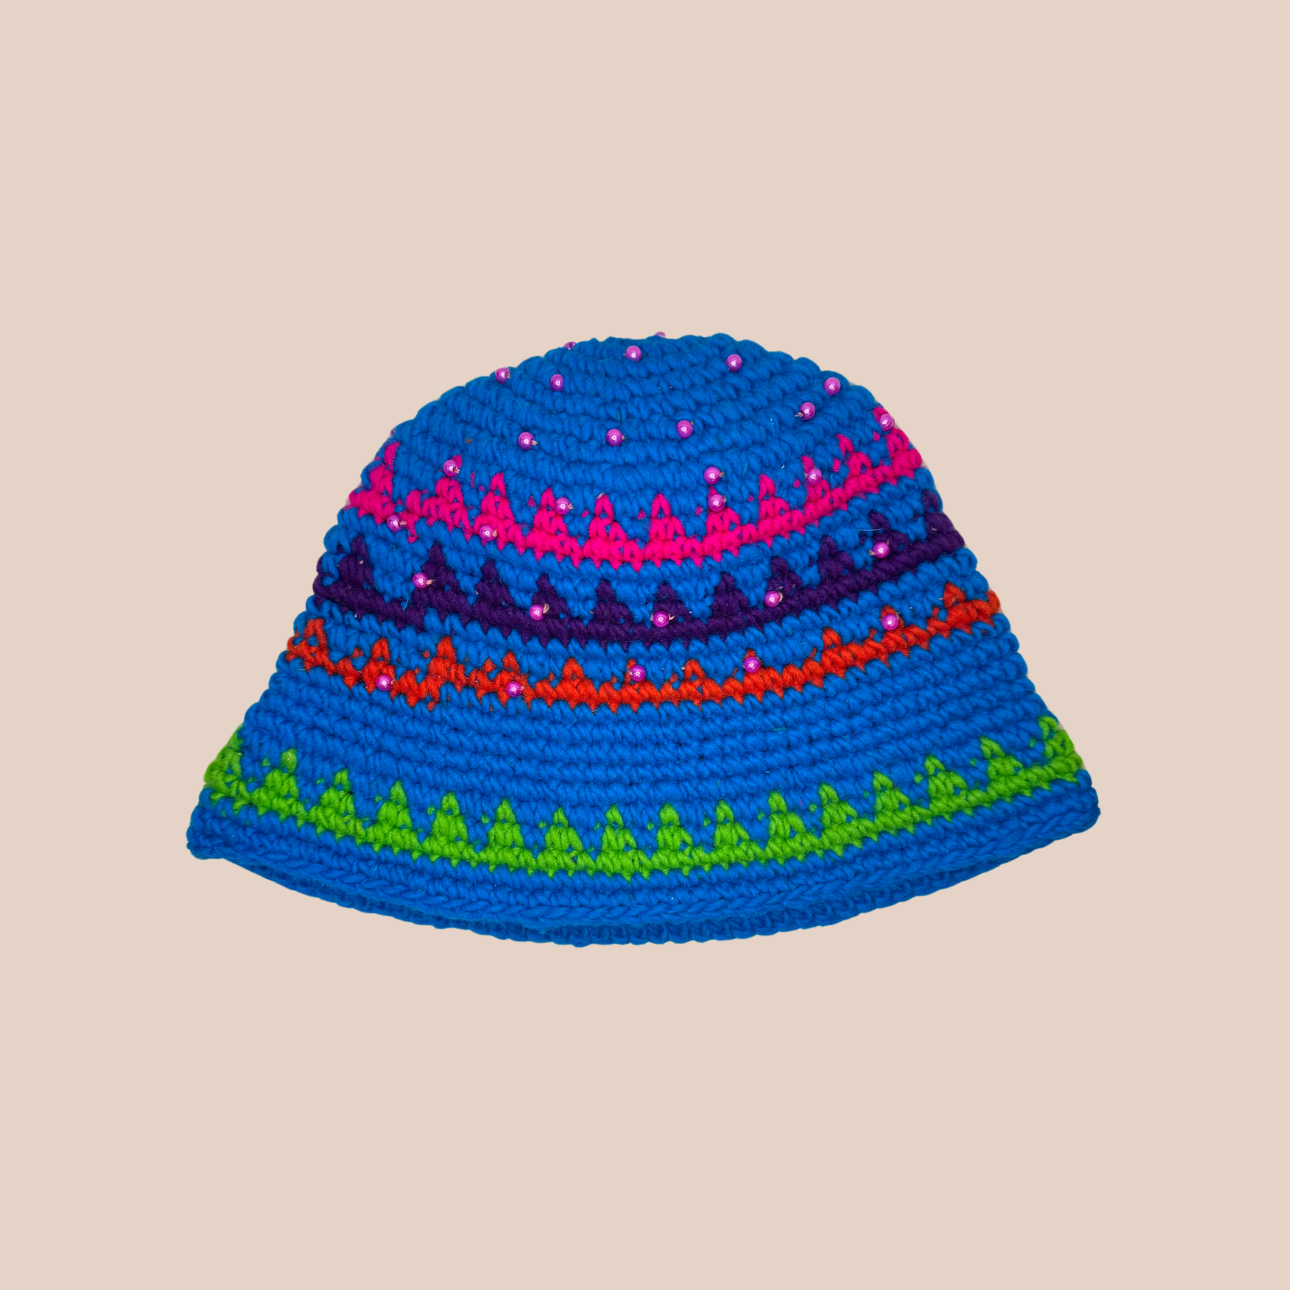 Image du bucket hat de Maison Badigo, bucket hat (bob) en laine crocheté détail perles multicolore et tendance